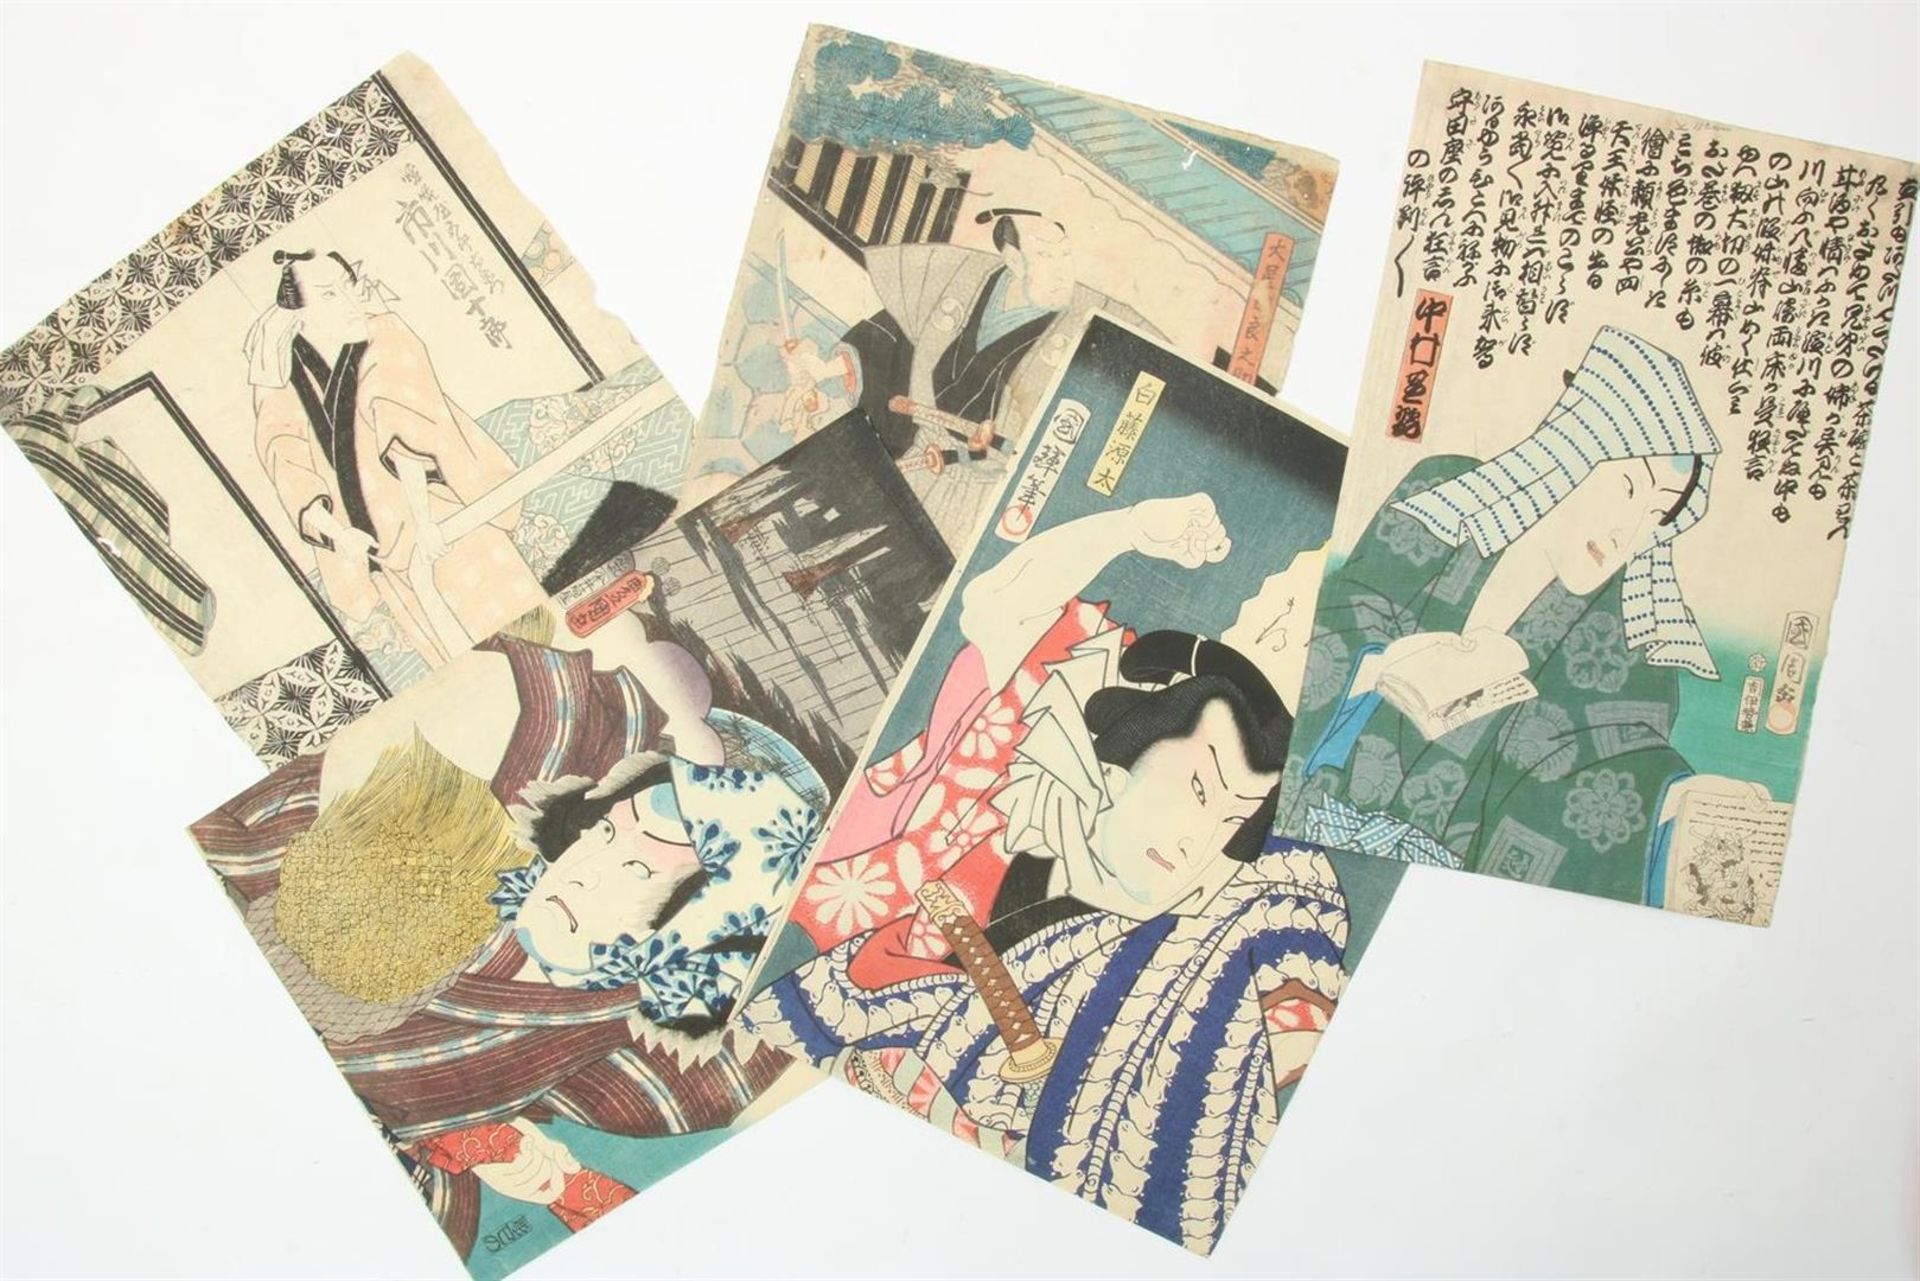 5 woodblock prints depicting Samurai, Japan